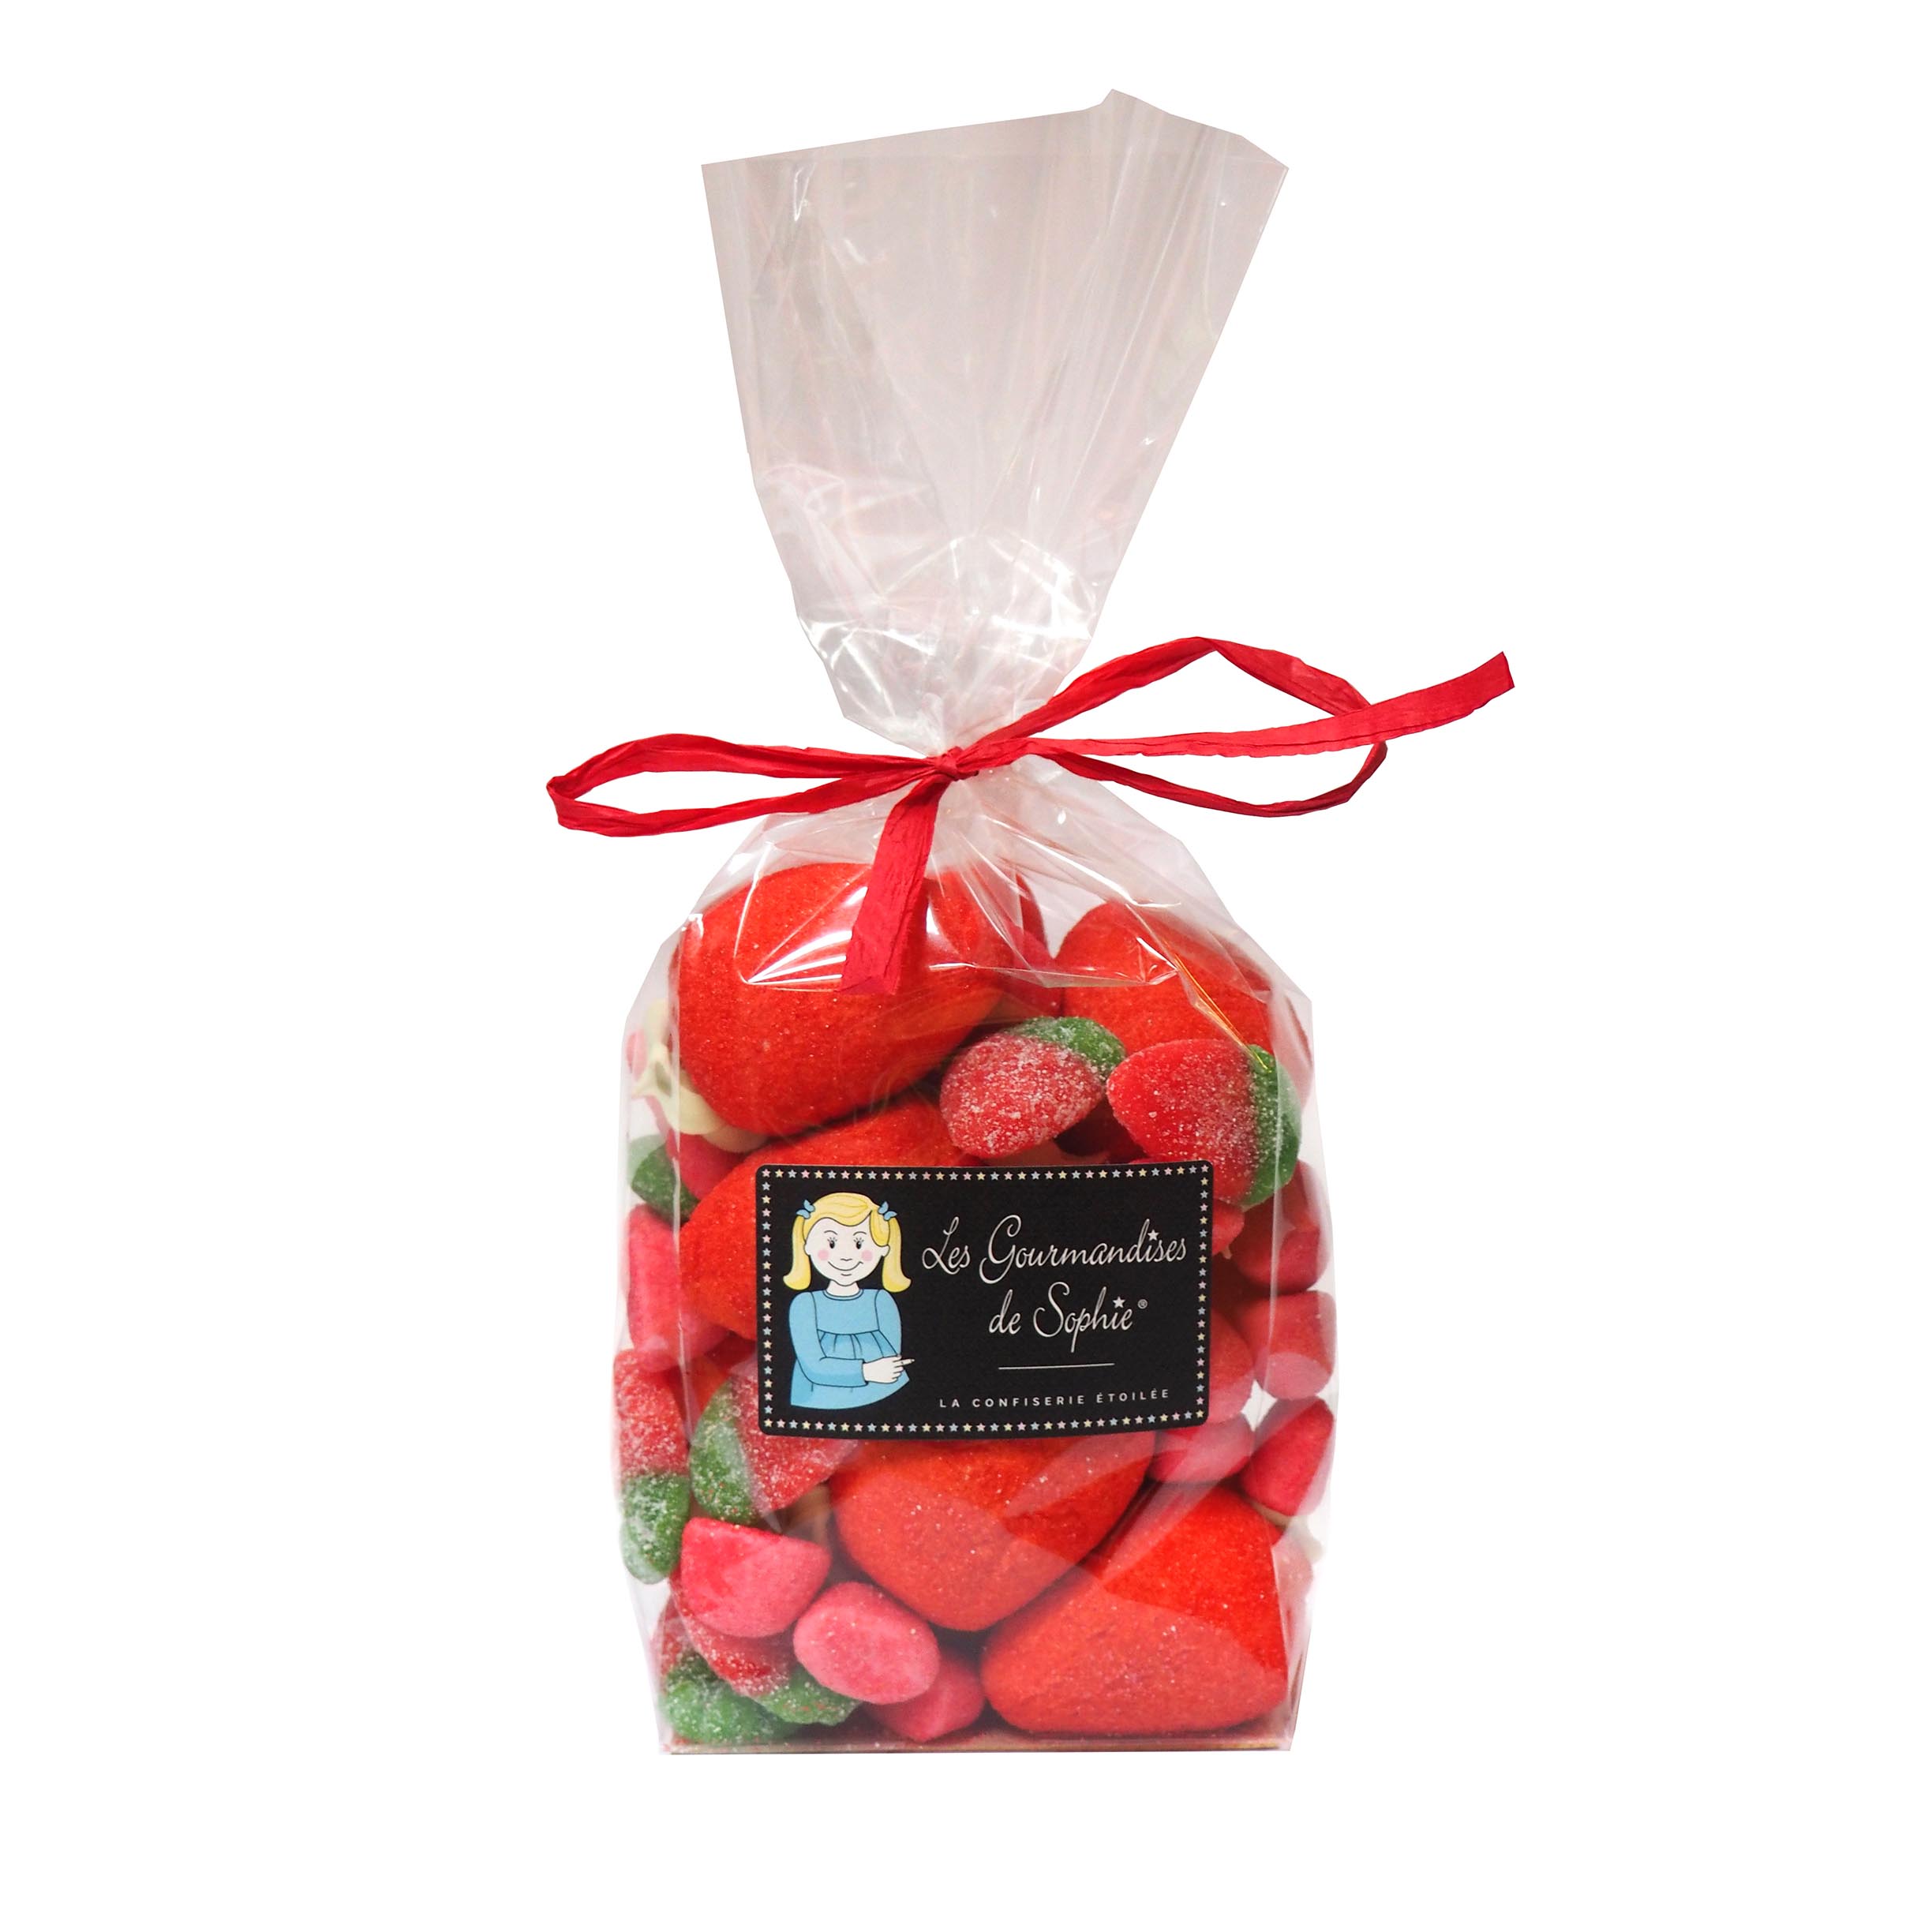  Punguta cu bomboane in forma de capsuni - sachet trio de fraises | Les Gourmandises de Sophie 